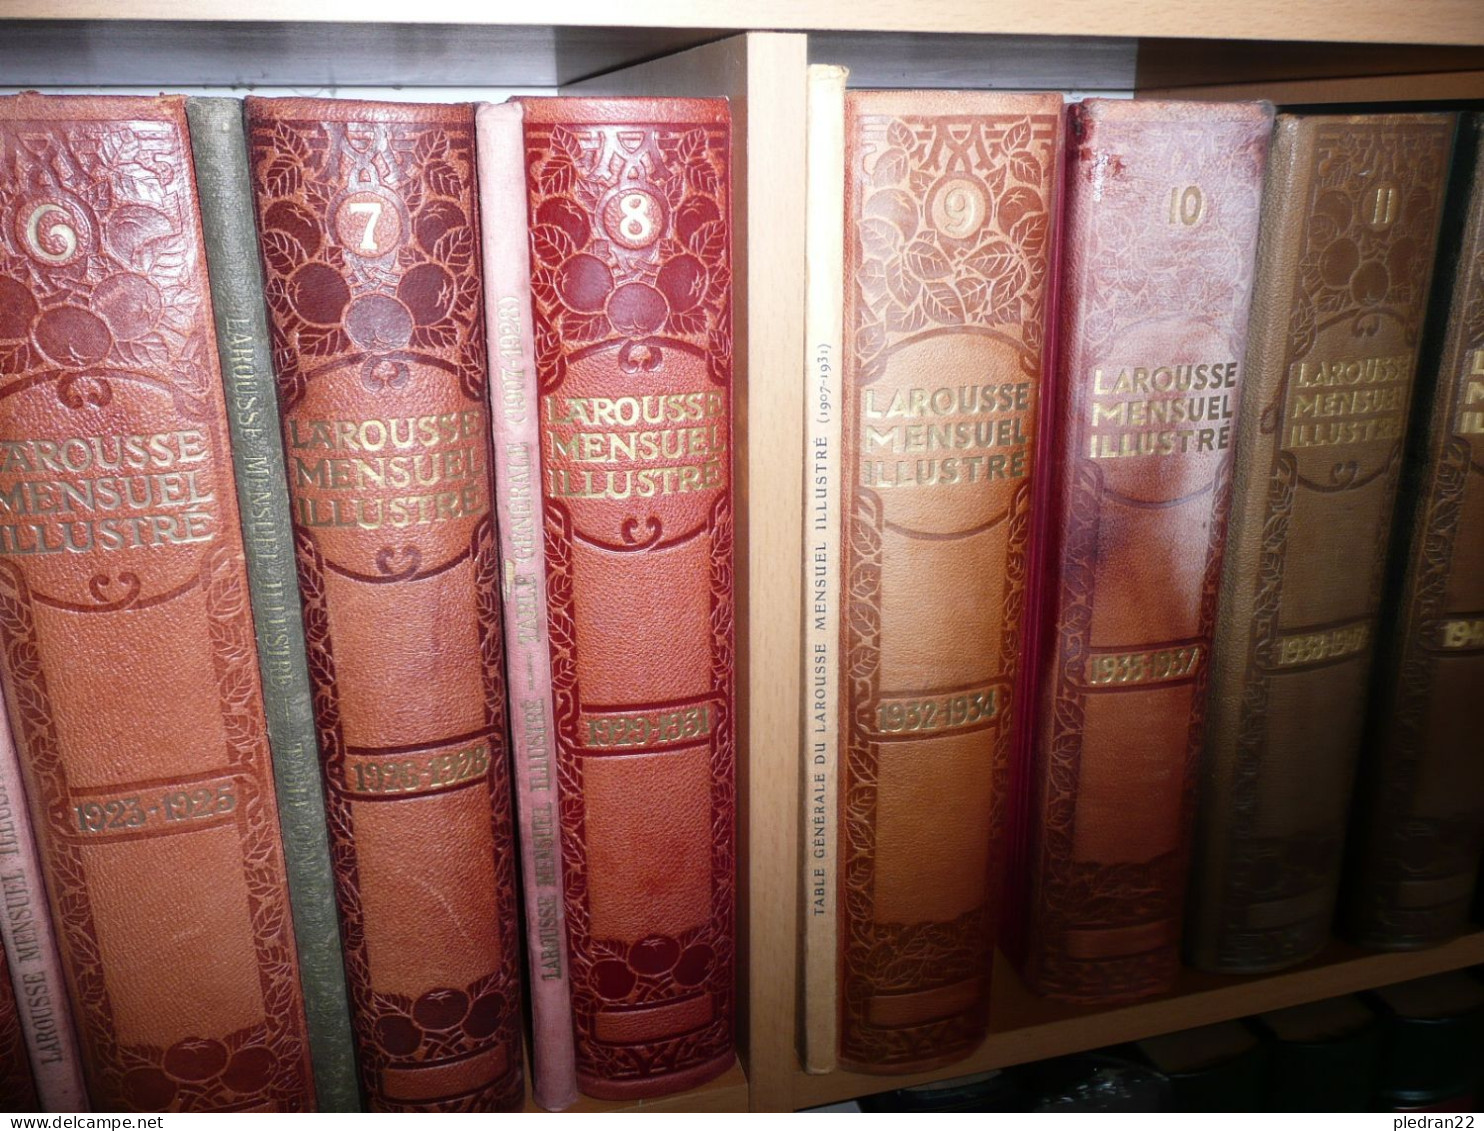 COLLECTION COMPLETE LAROUSSE MENSUEL ILLUSTRE 14 VOLUMES 1907 1957 AVEC TOUS LES SUPPLEMENTS + NOUVEAU LAROUSSE ILLUSTRE - Encyclopaedia